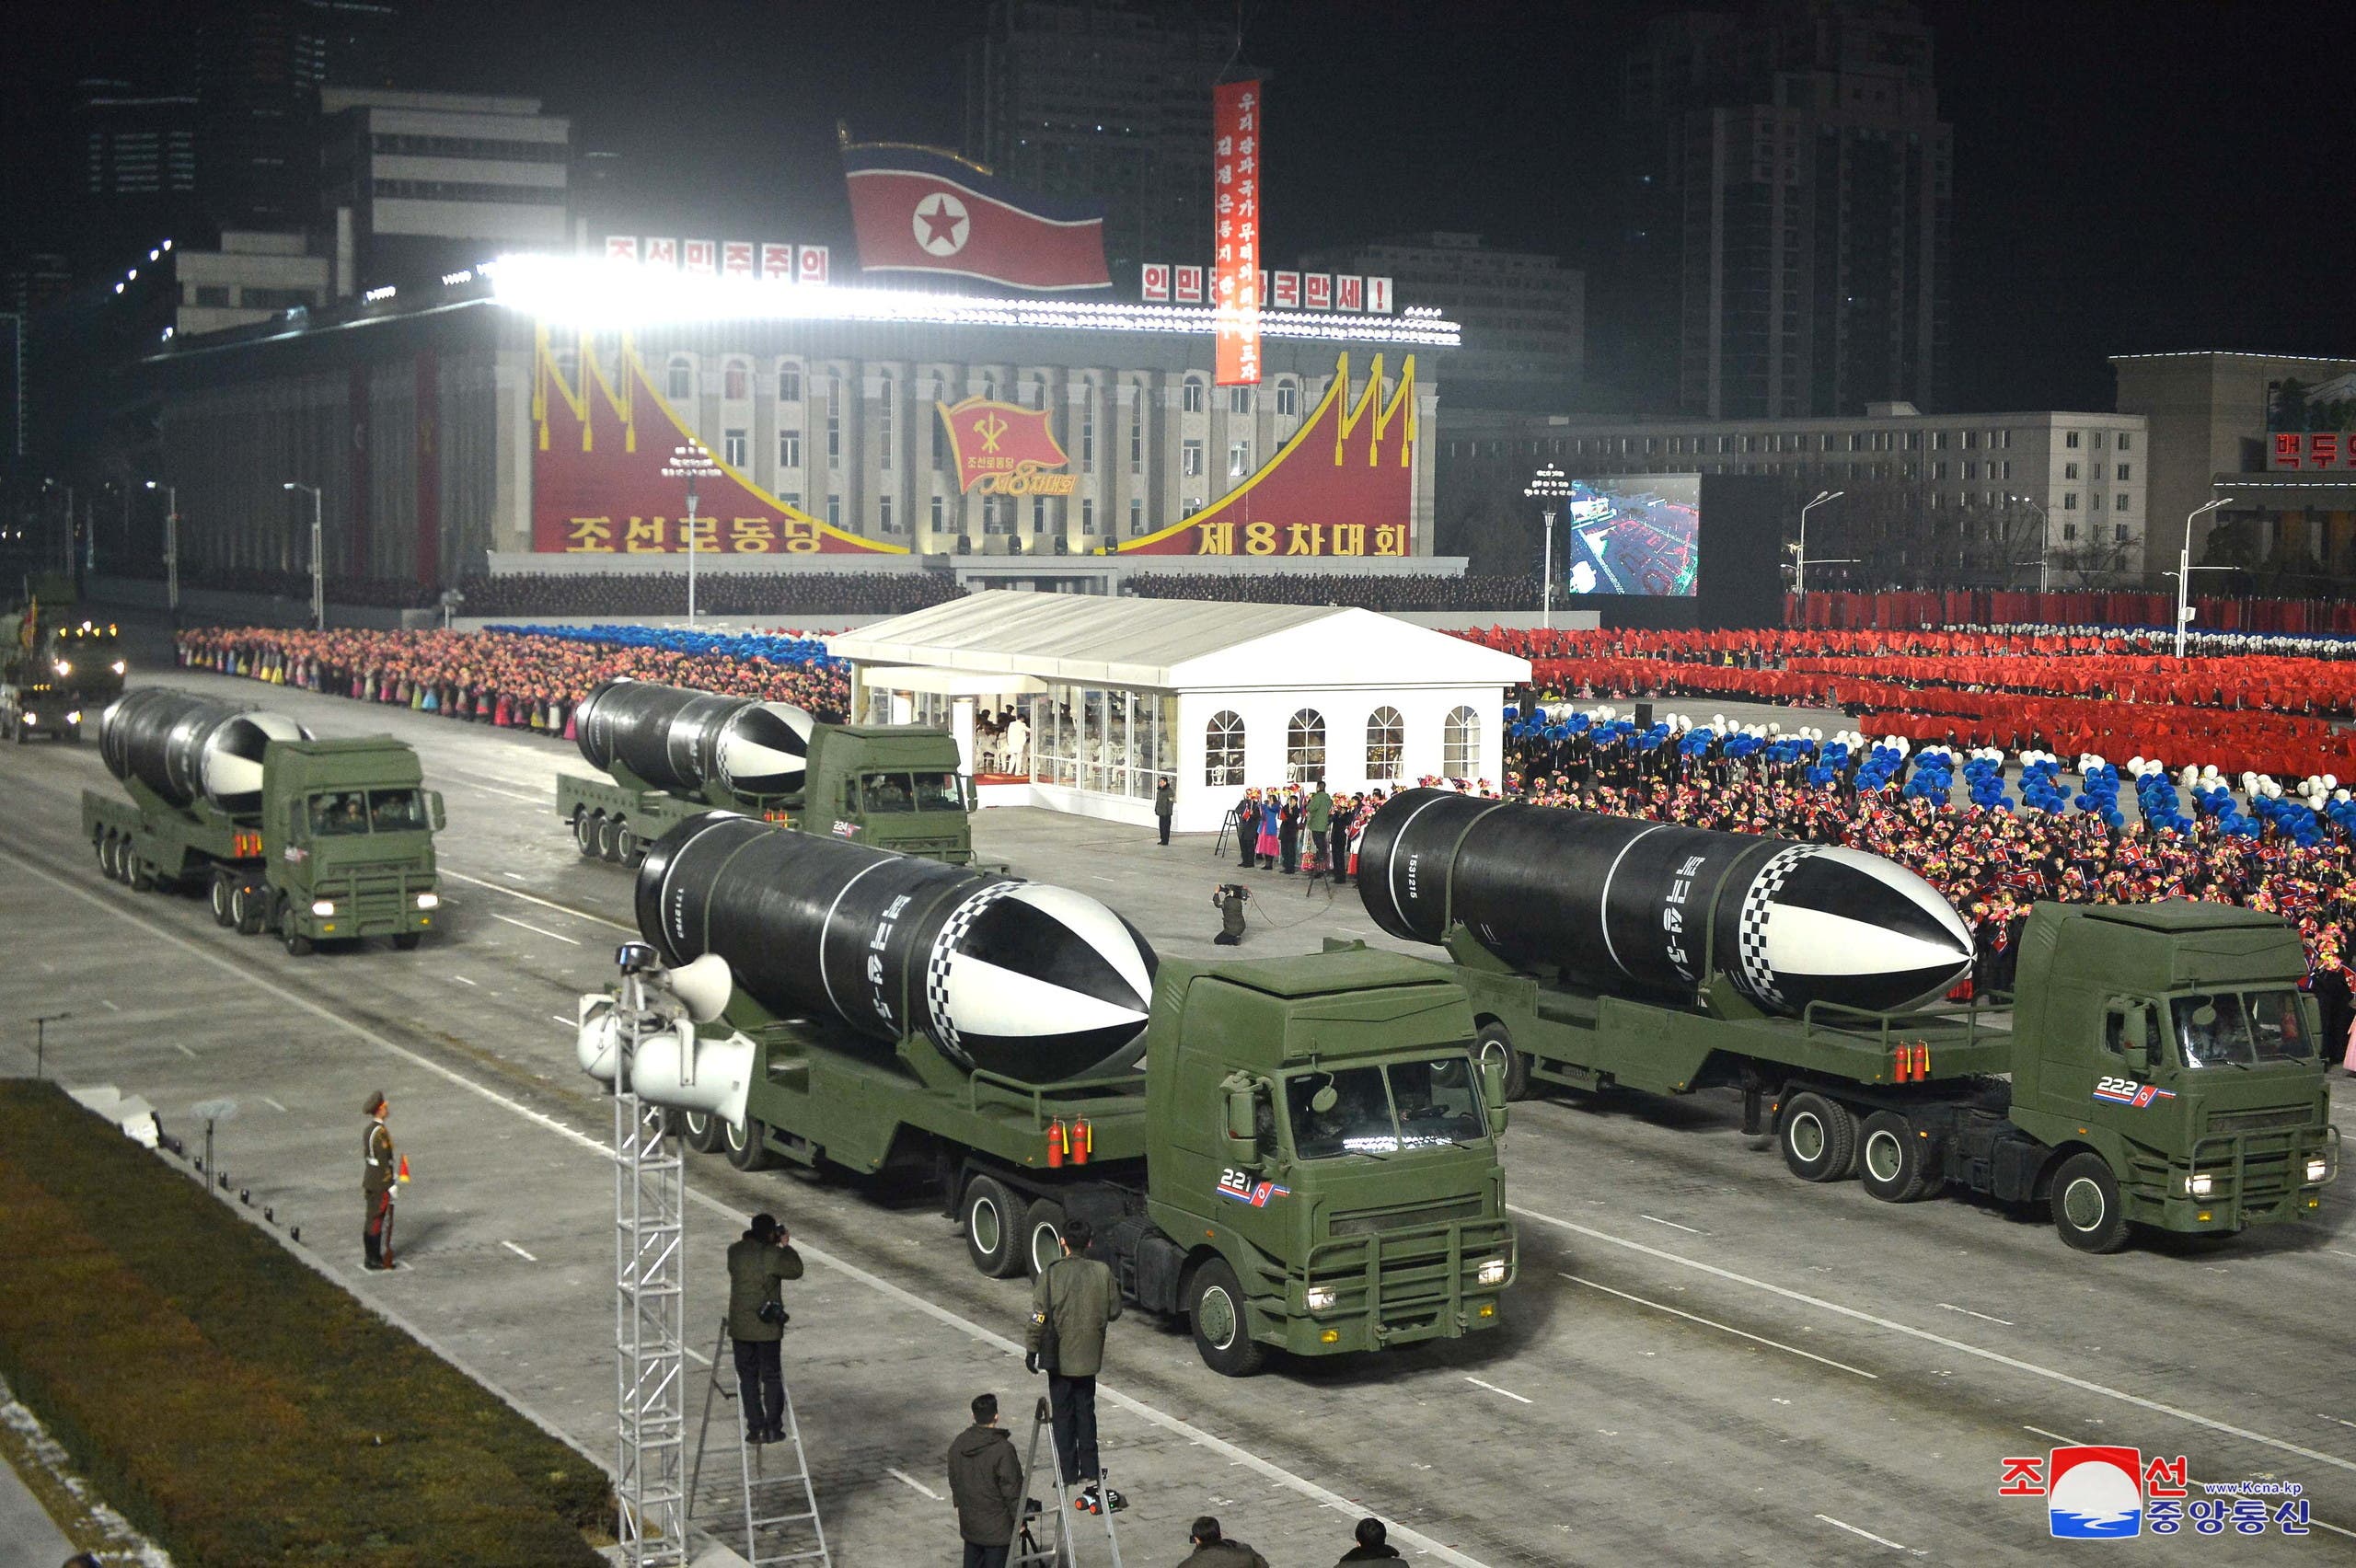 كوريا الشمالية تستعرض اسلحتها خلال عرض عسكري في يناير الماضي في العاصمة